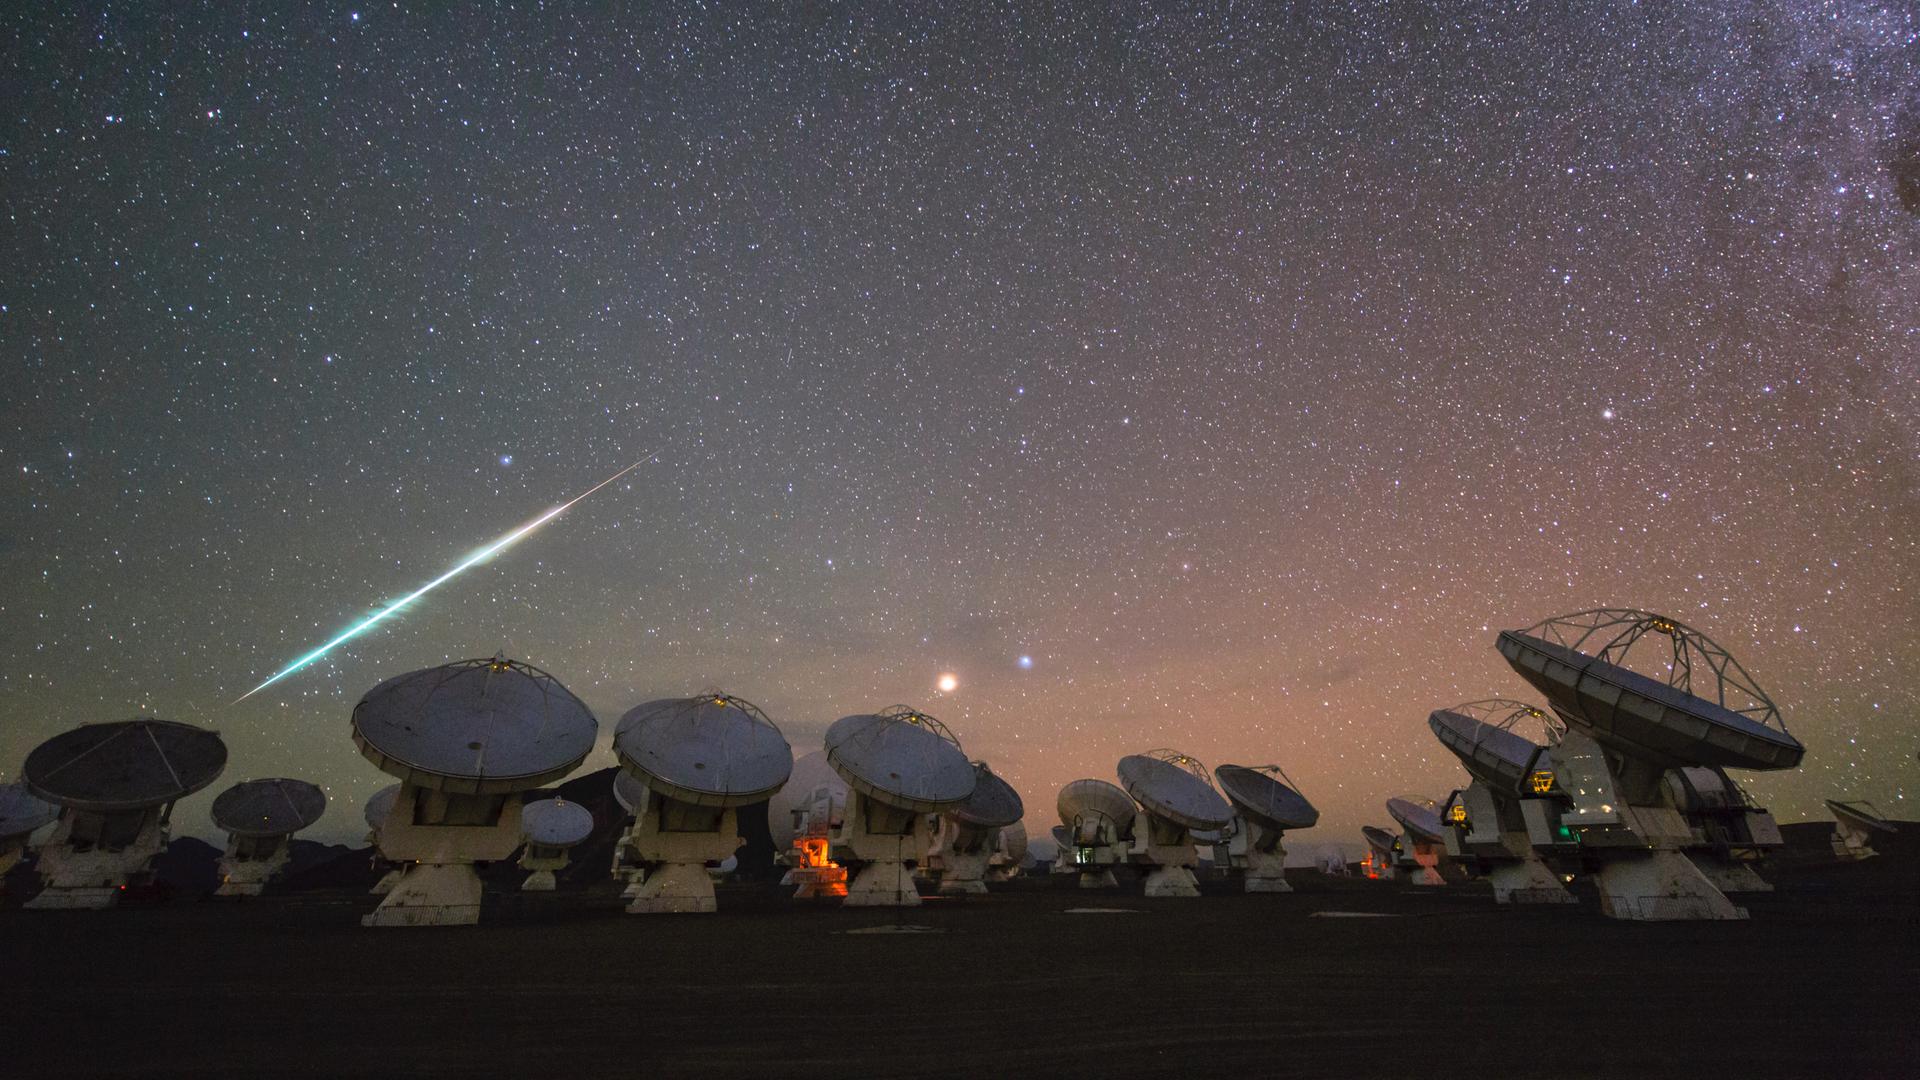 Meteorschweif am Sternenhimmel vor der Silhouette einer Teleskopanlage mit großer Radarschüssel.